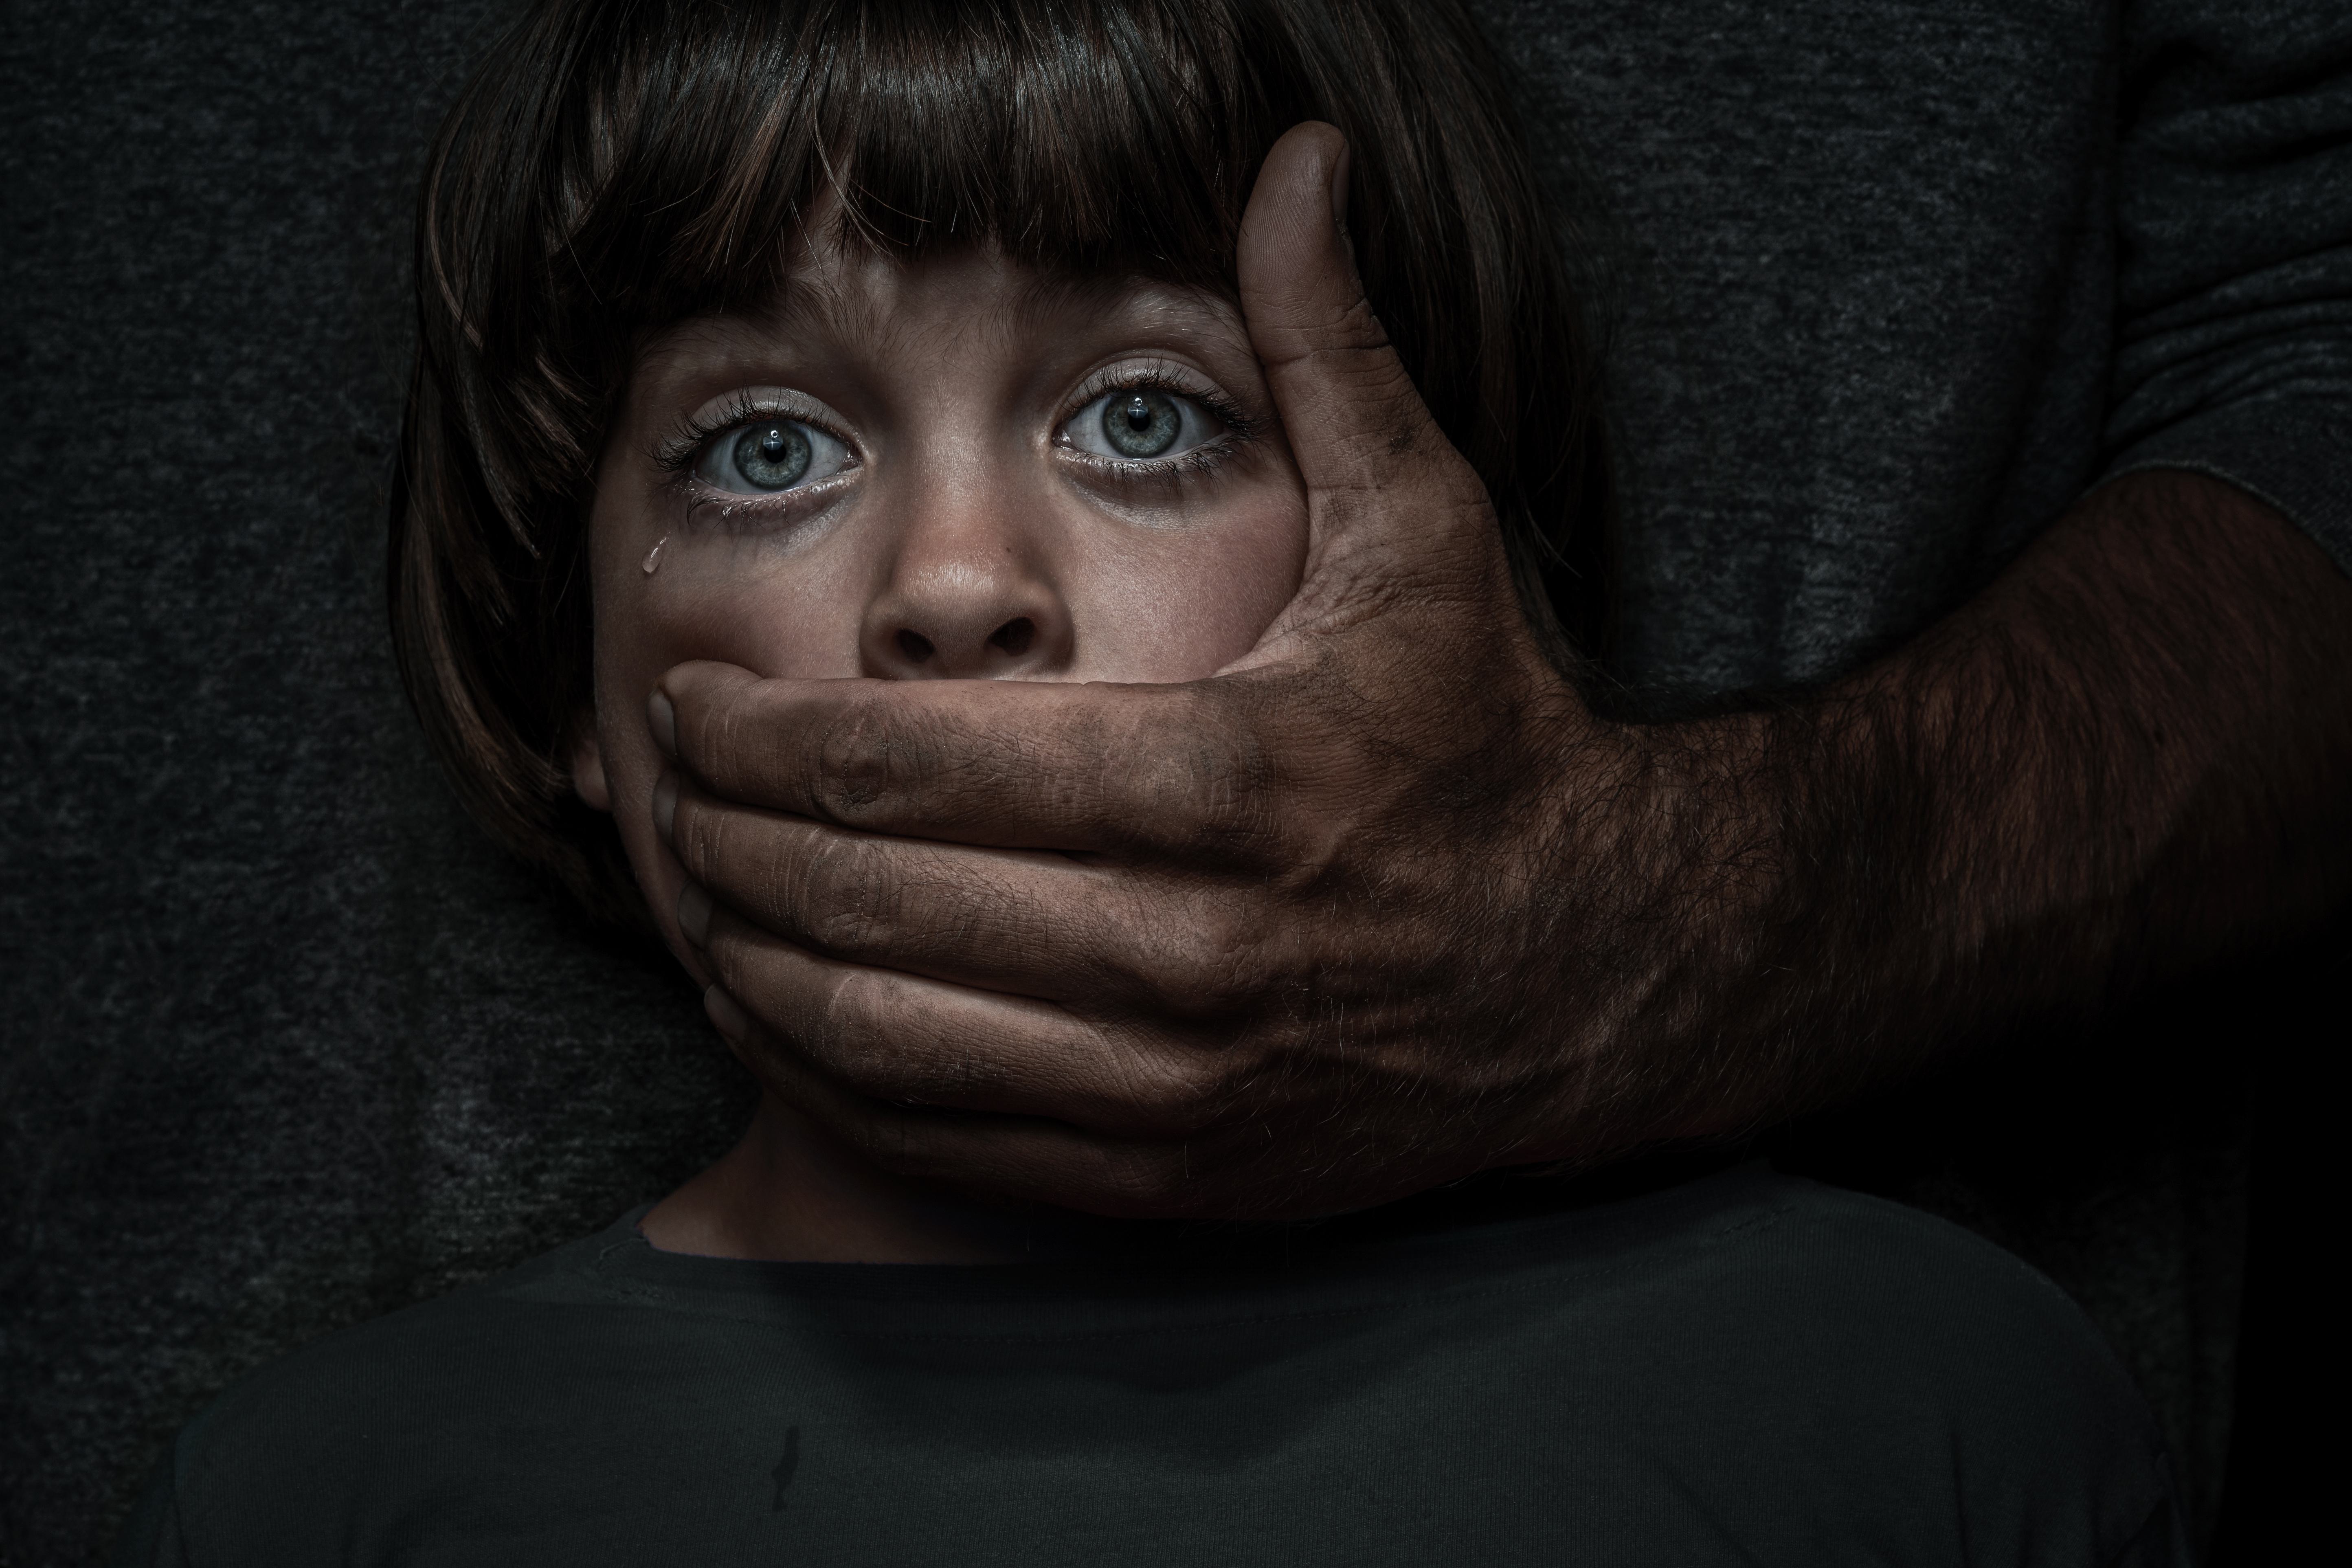 Duits kinderpornonetwerk met 400.000 leden opgerold: pedofilie neemt gestaag toe